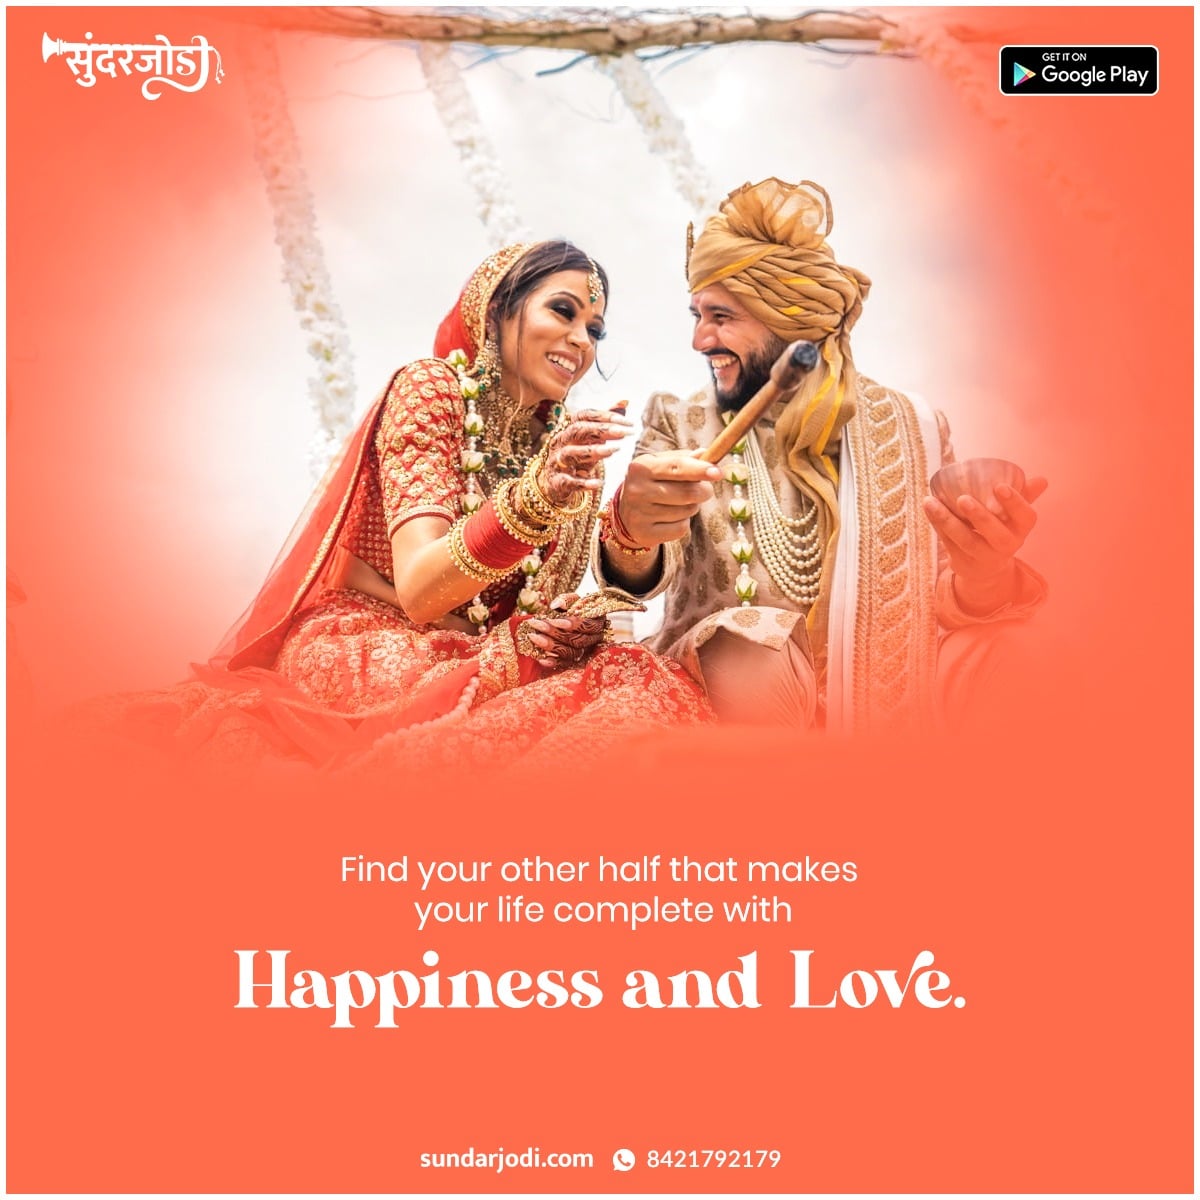 Matrimony
Best matrimony site in India